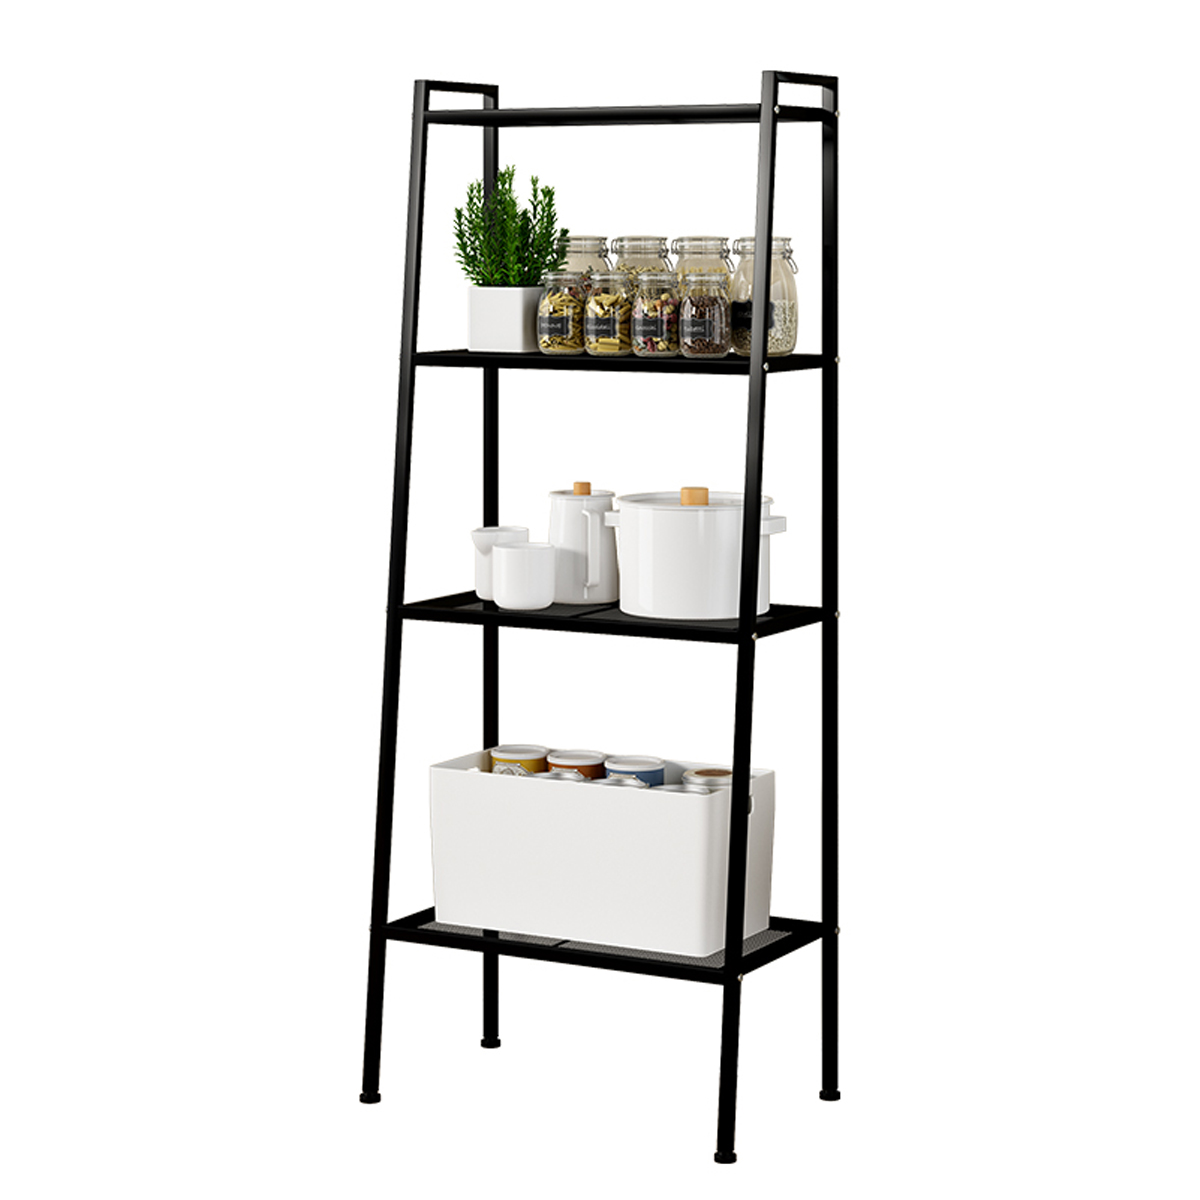 

4-Tier Durable Bookcase Bookshelf Leaning Wall Shelf Shelving Ladder Black/White